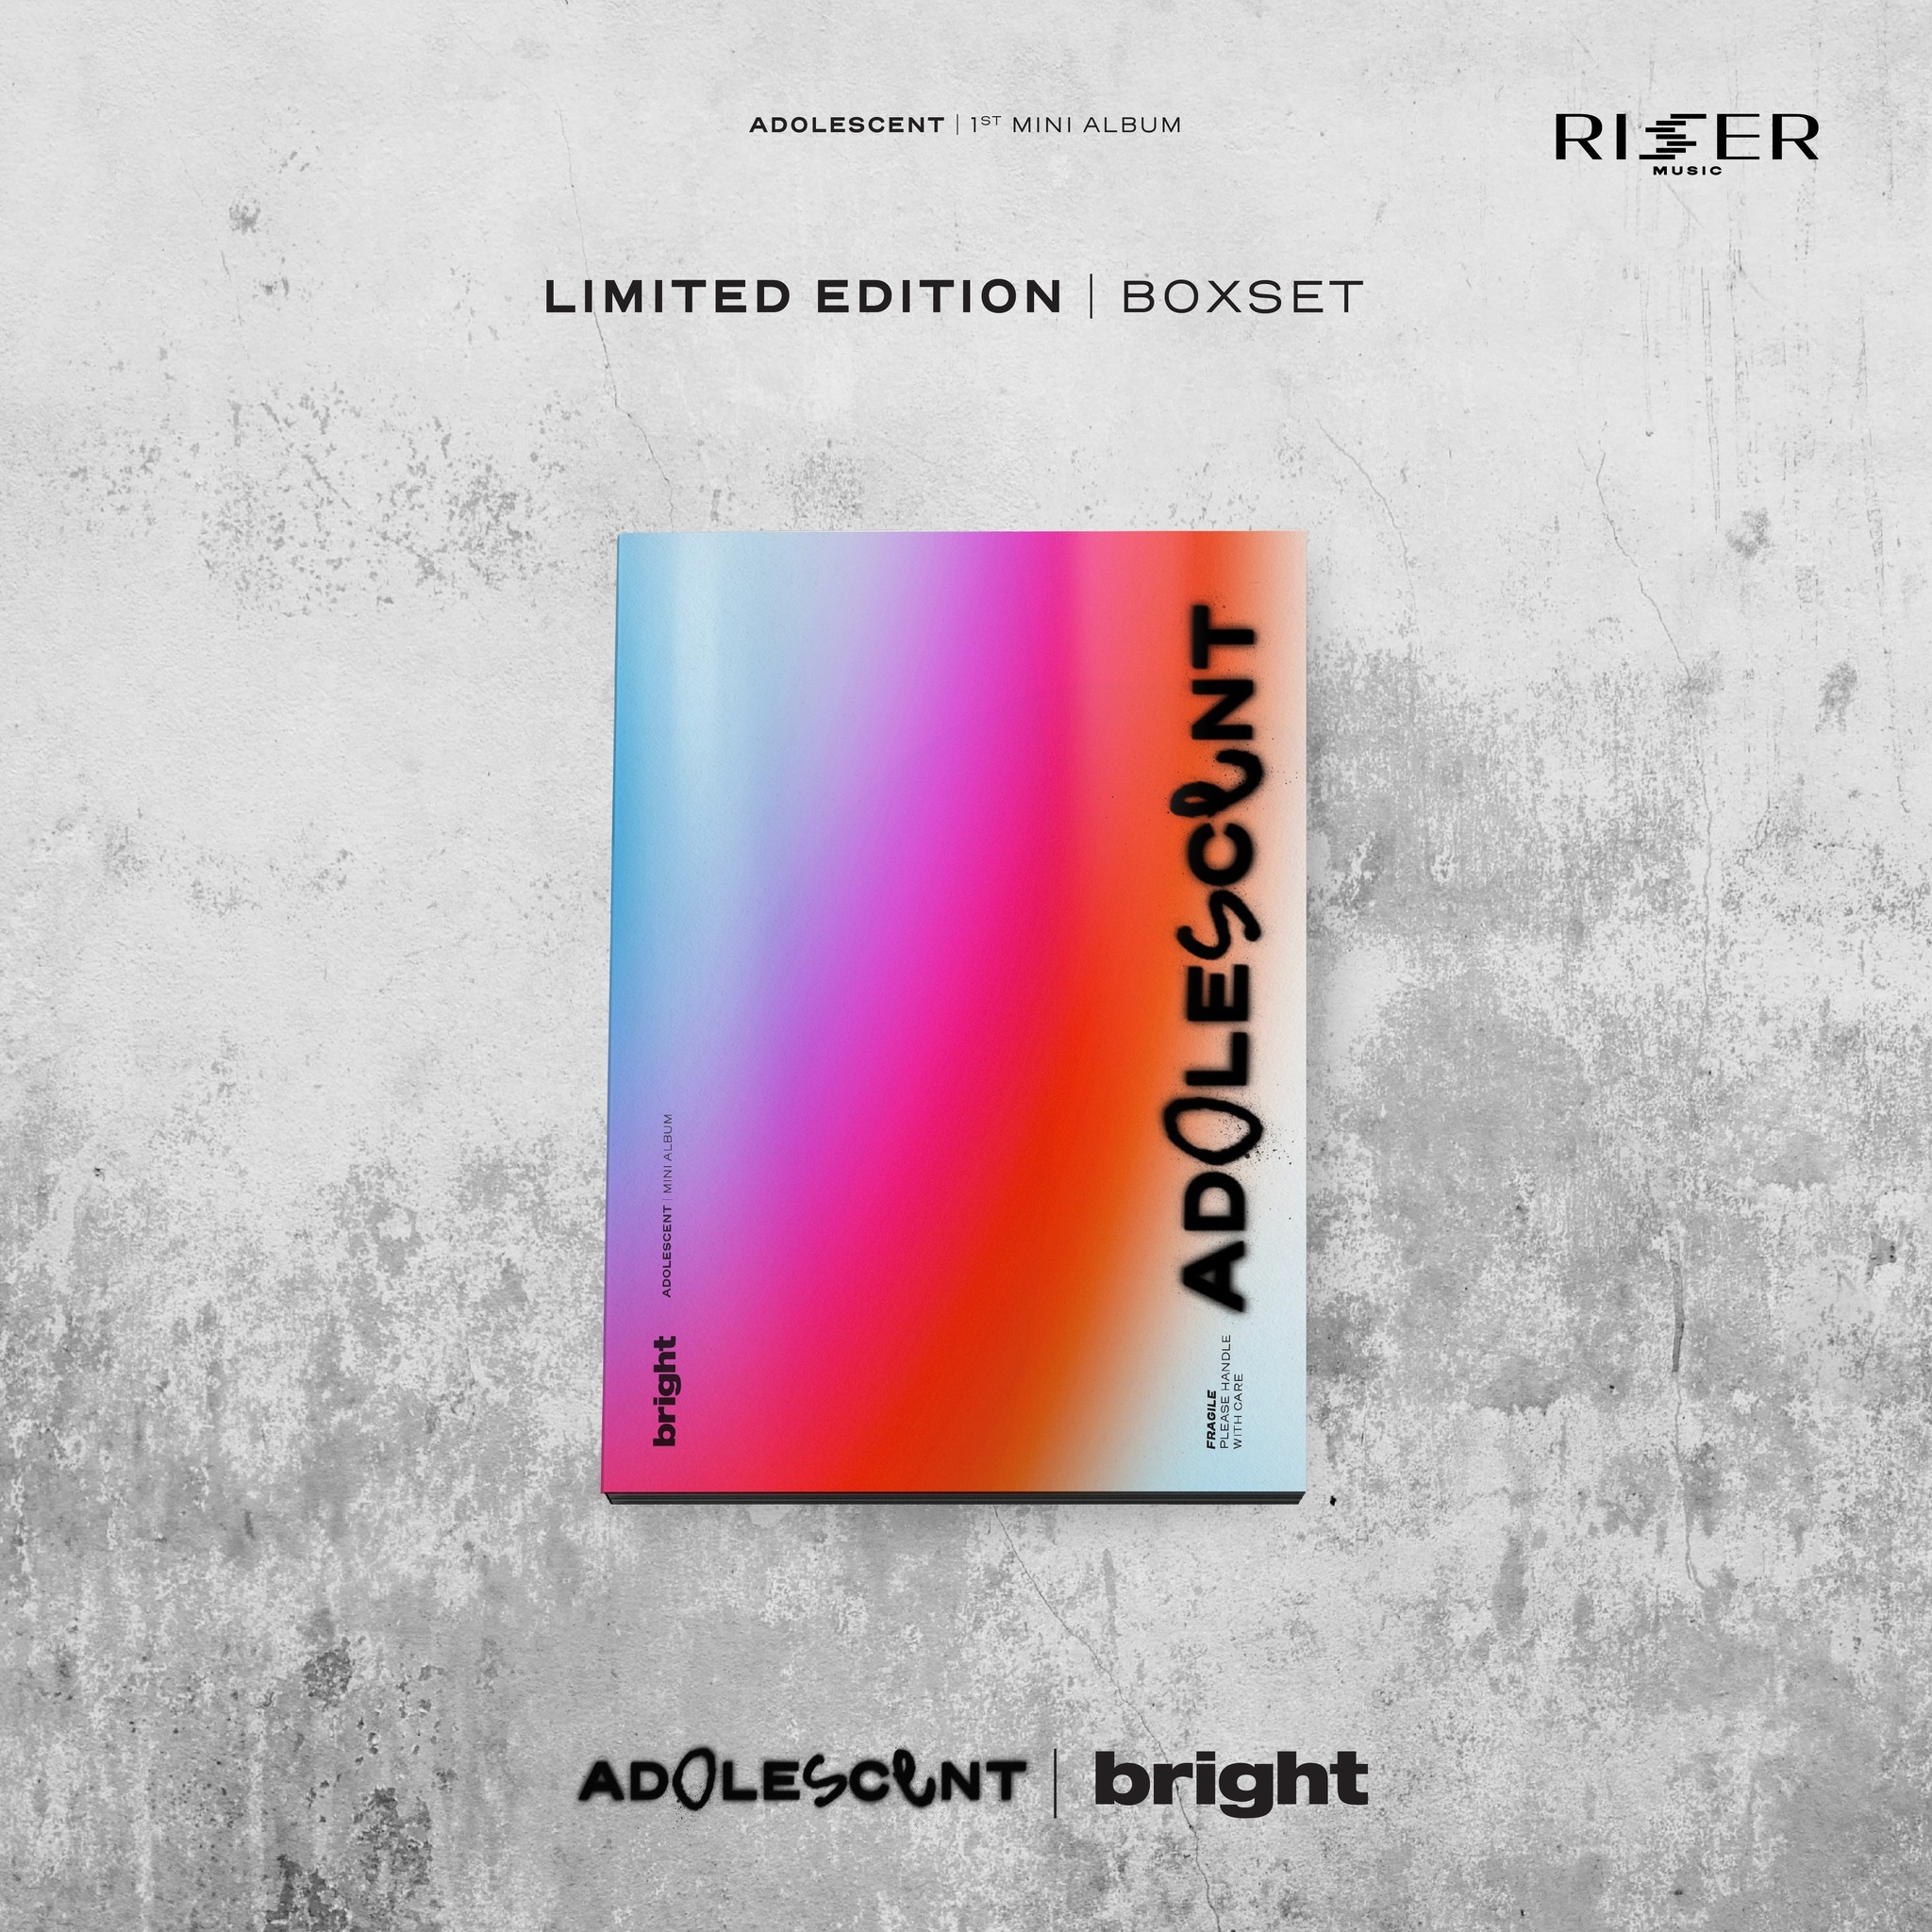 Bright ADOLESCENT 1ST MINI ALBUM LIMITED EDITION BOXSET